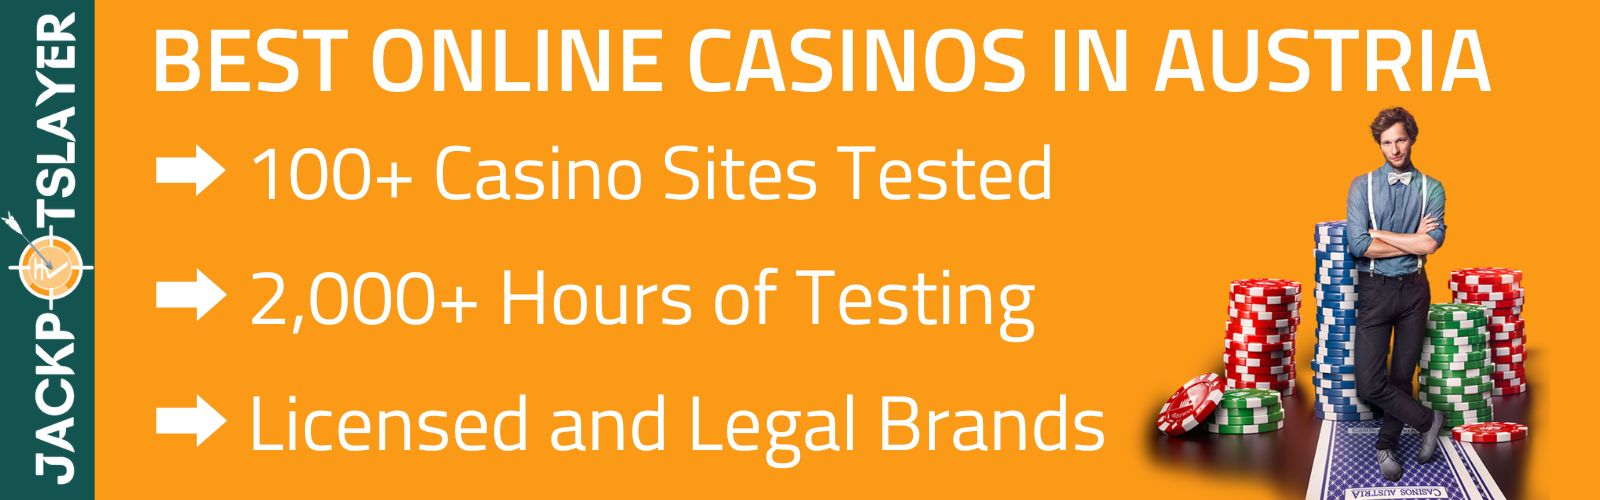 Möchten Sie ein florierendes Geschäft? Konzentrieren Sie sich auf Sichere Online Casinos!